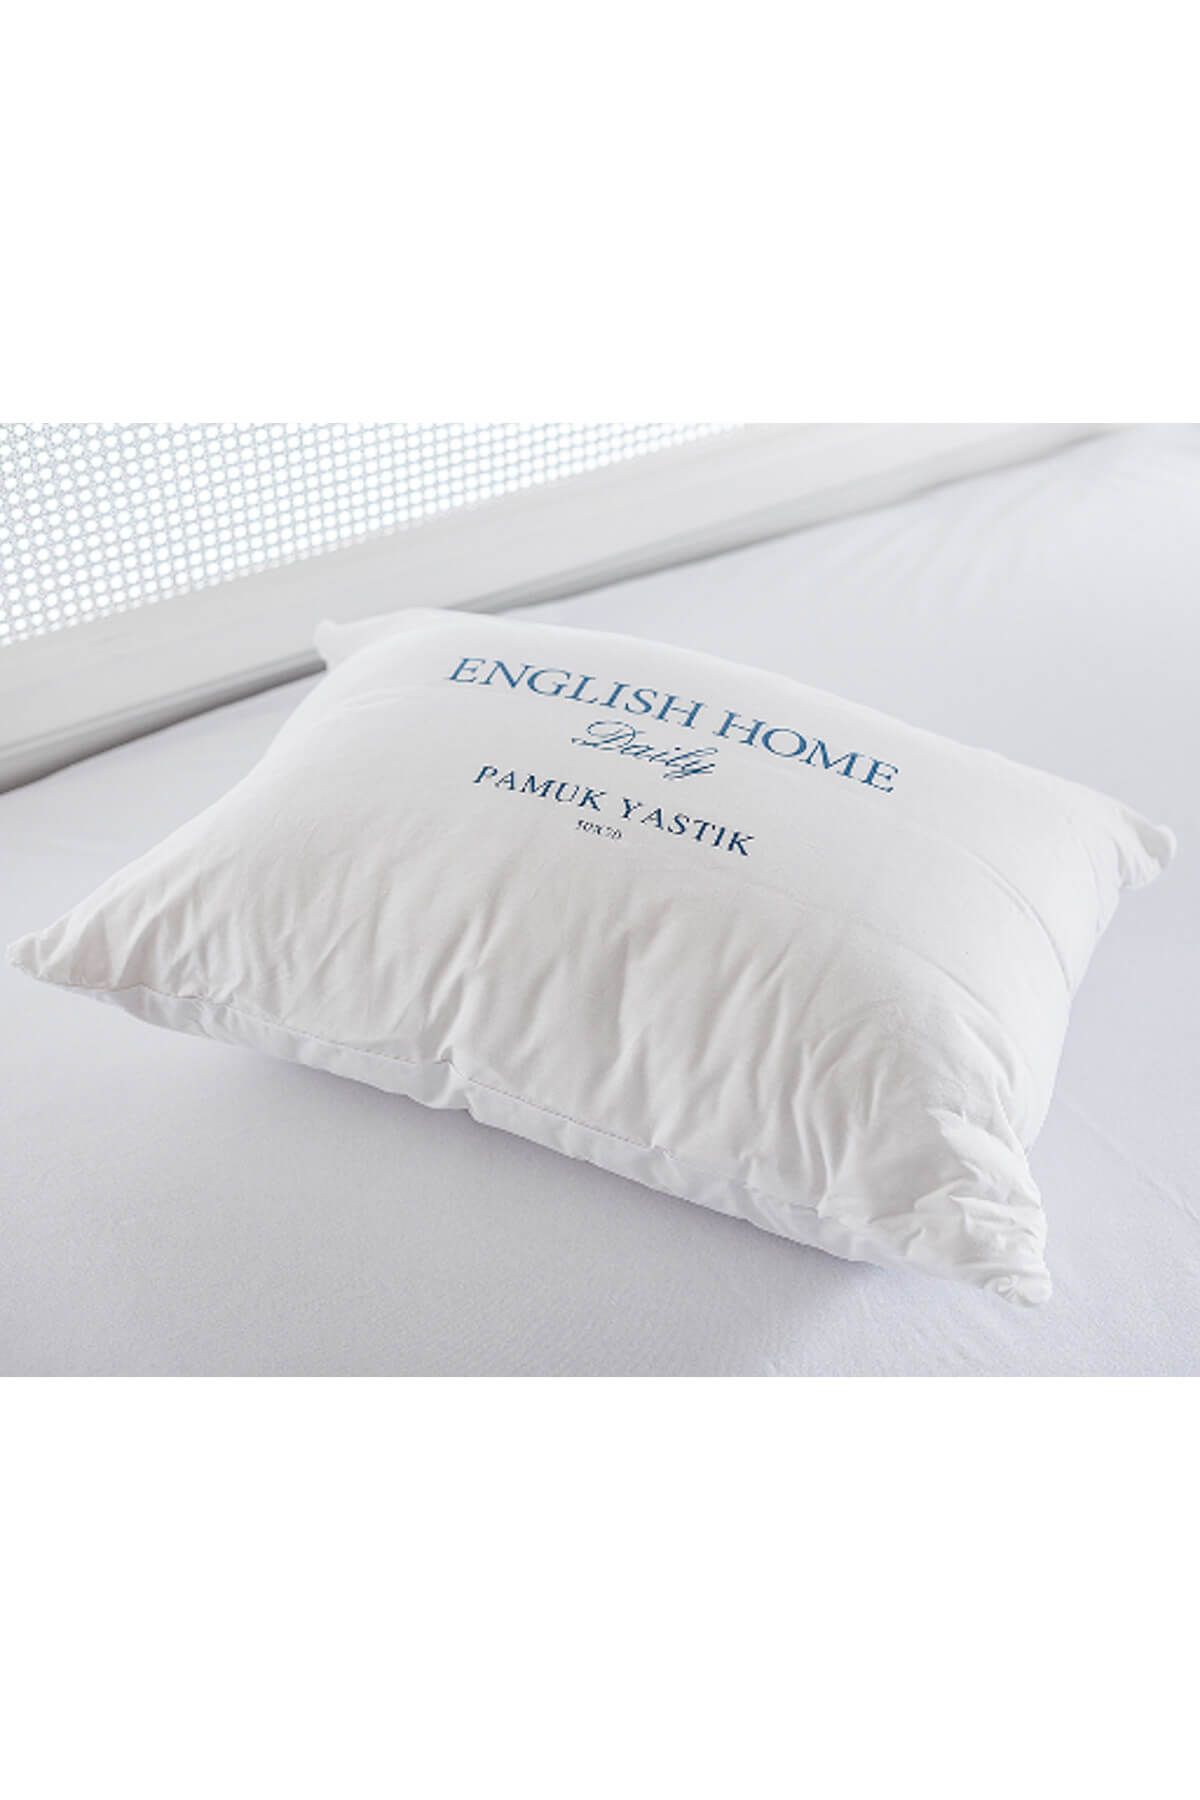 English Home Comfy Pamuk Yastık 50x70 Cm Beyaz